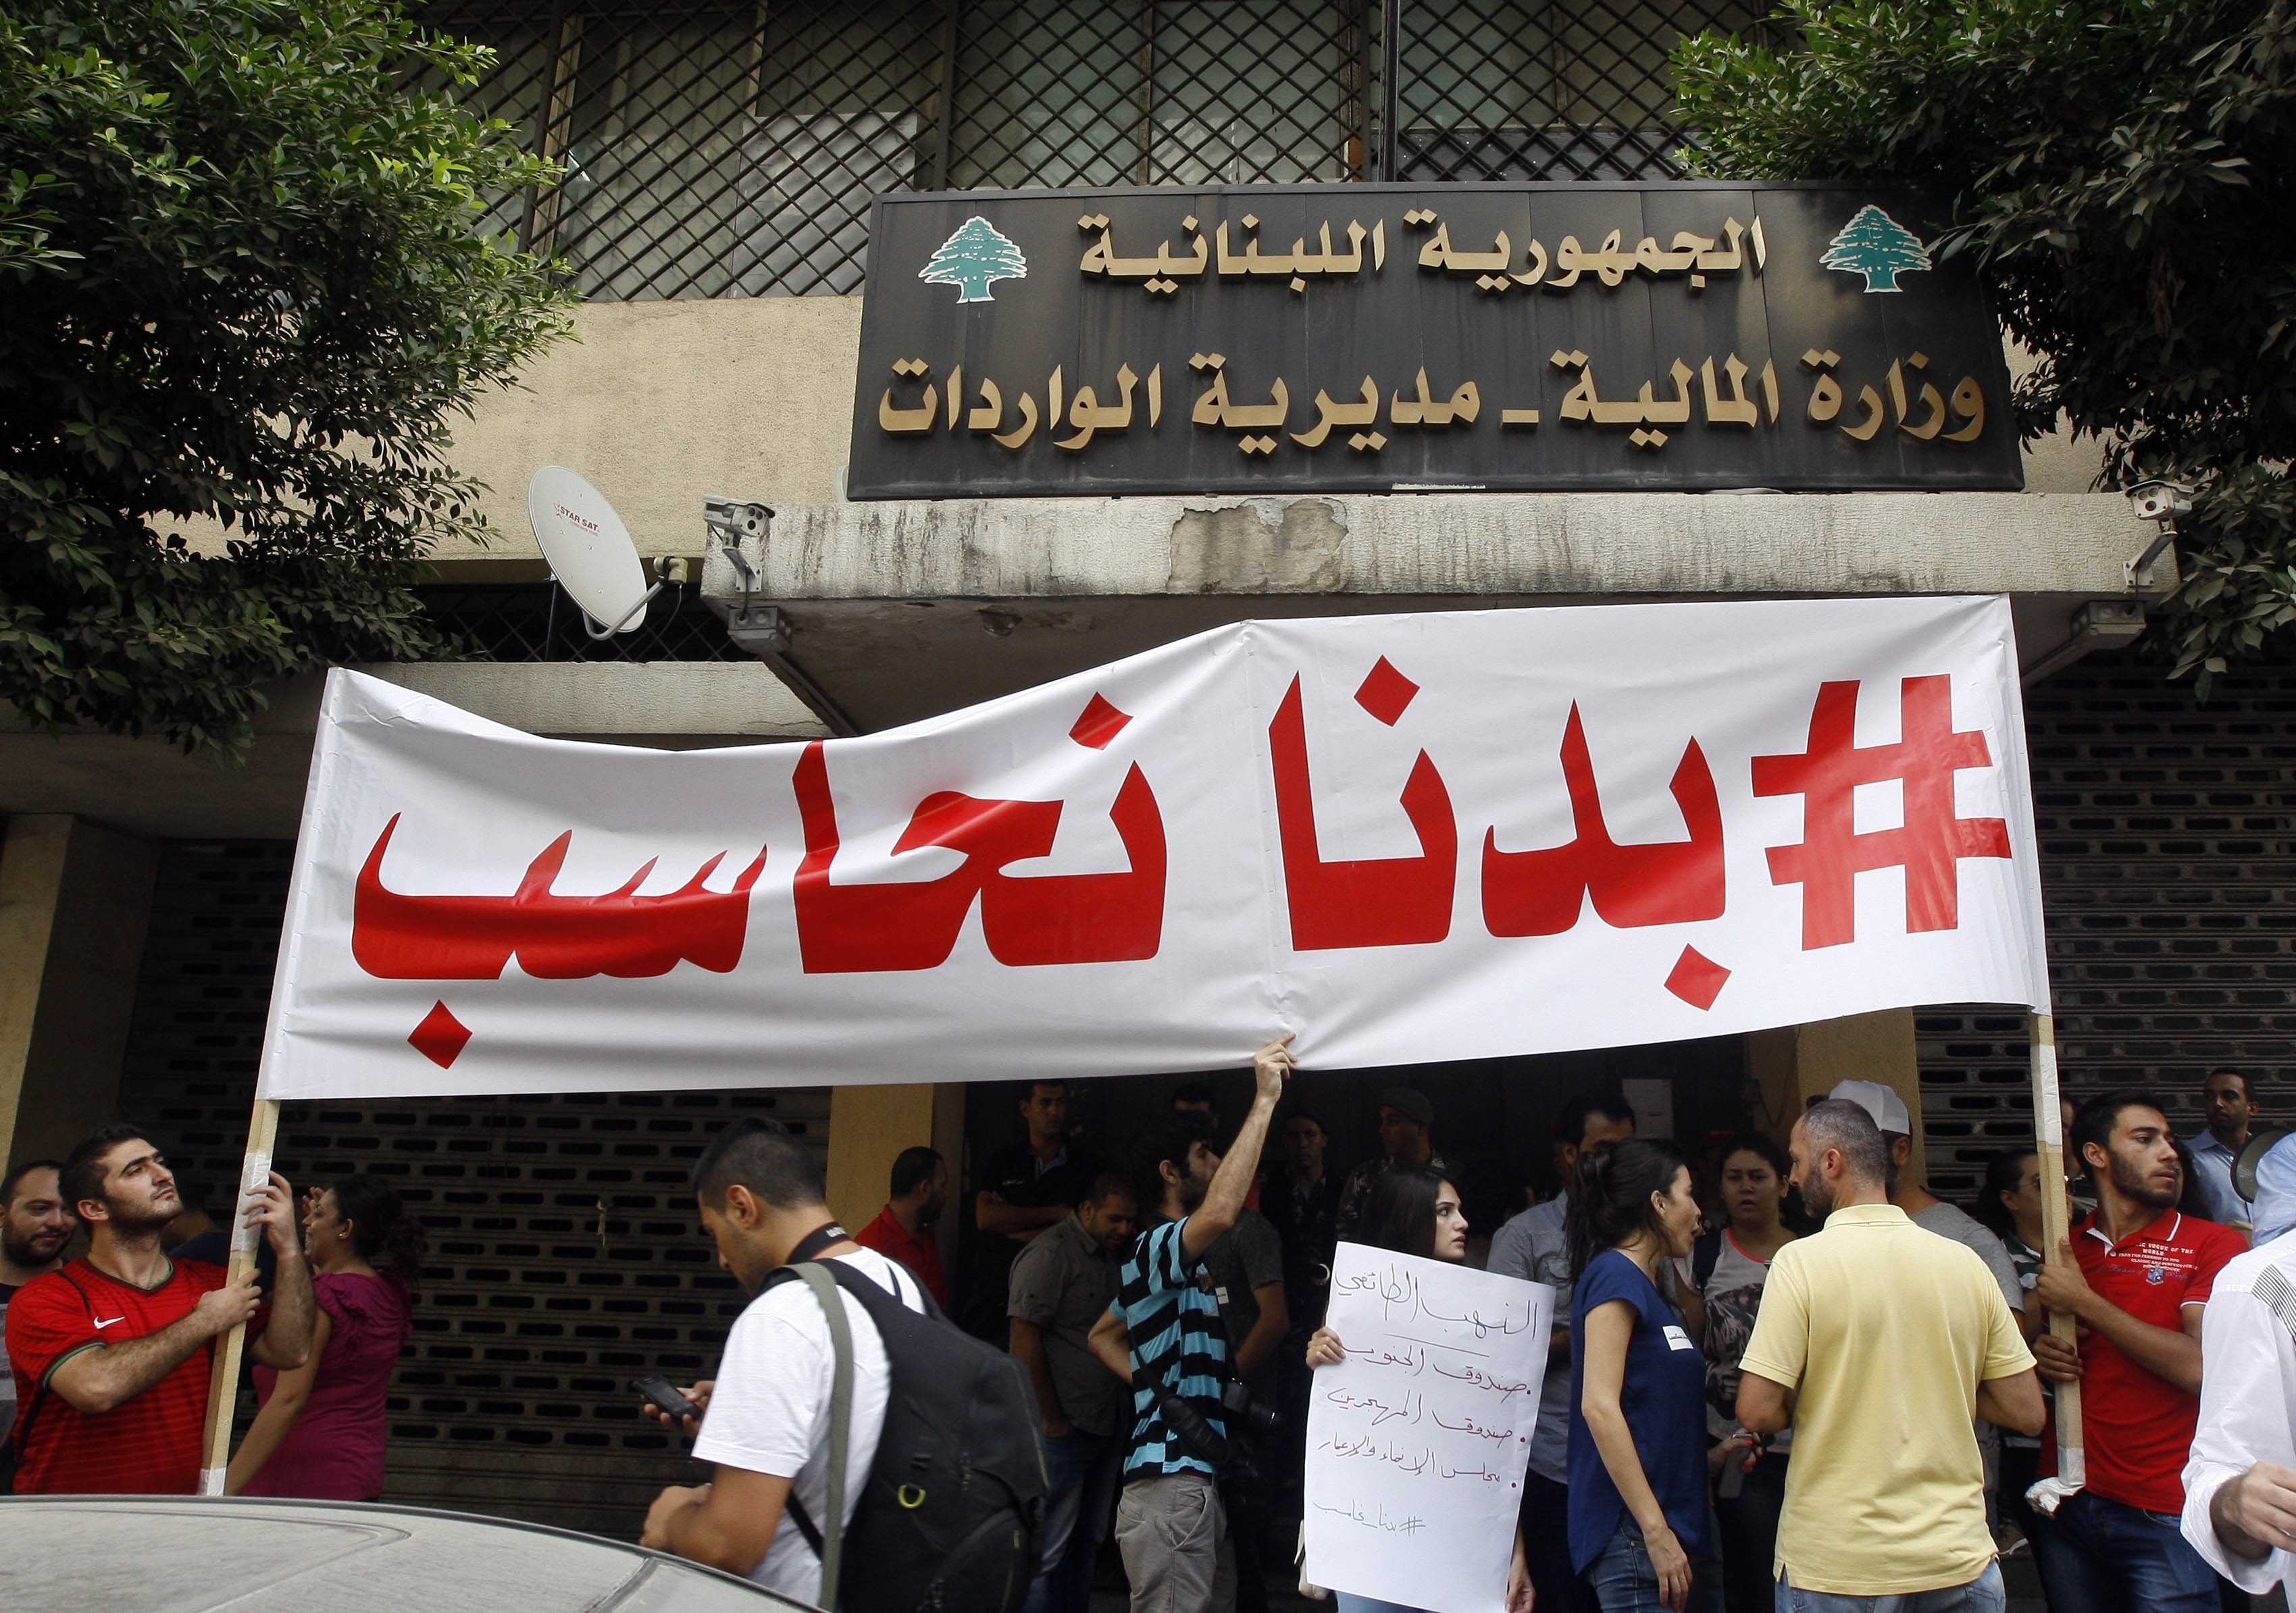 ناشطون لبنانيون يعتصمون في بيروت احتجاجاً على الفساد والهدر